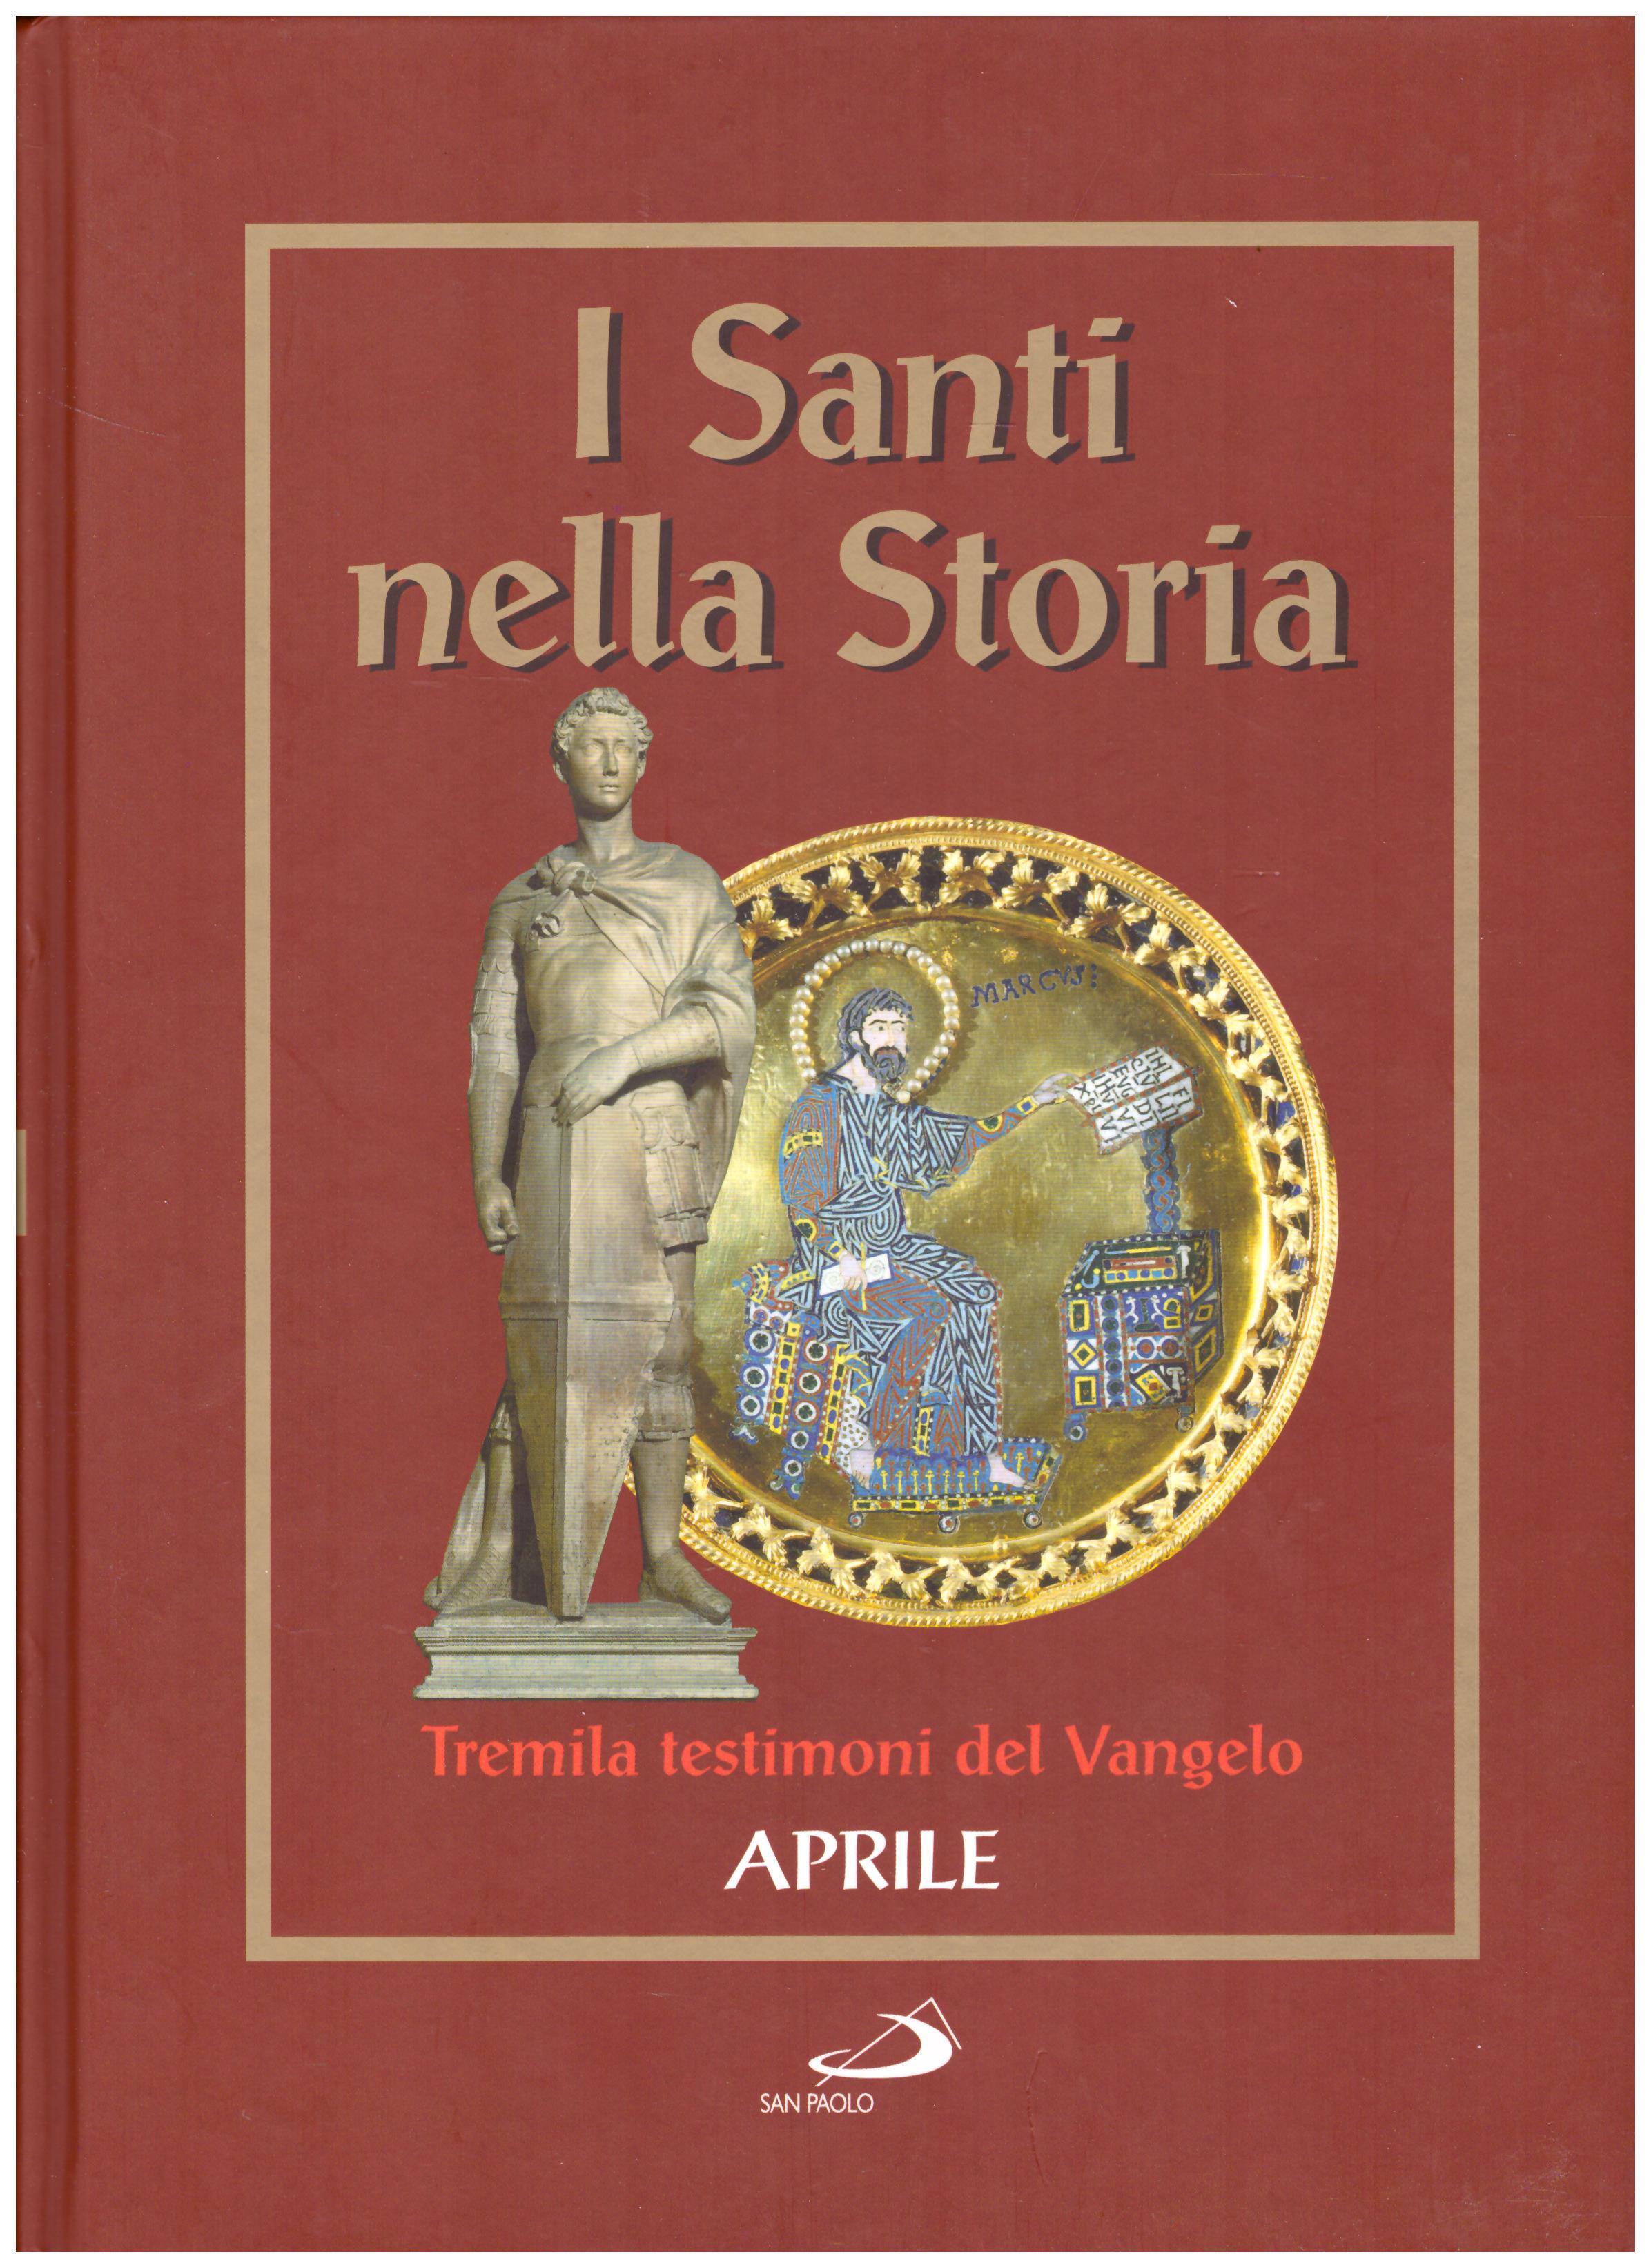 Titolo: I santi nella storia, Aprile Autore: AA.VV.  Editore: San Paolo, 2006